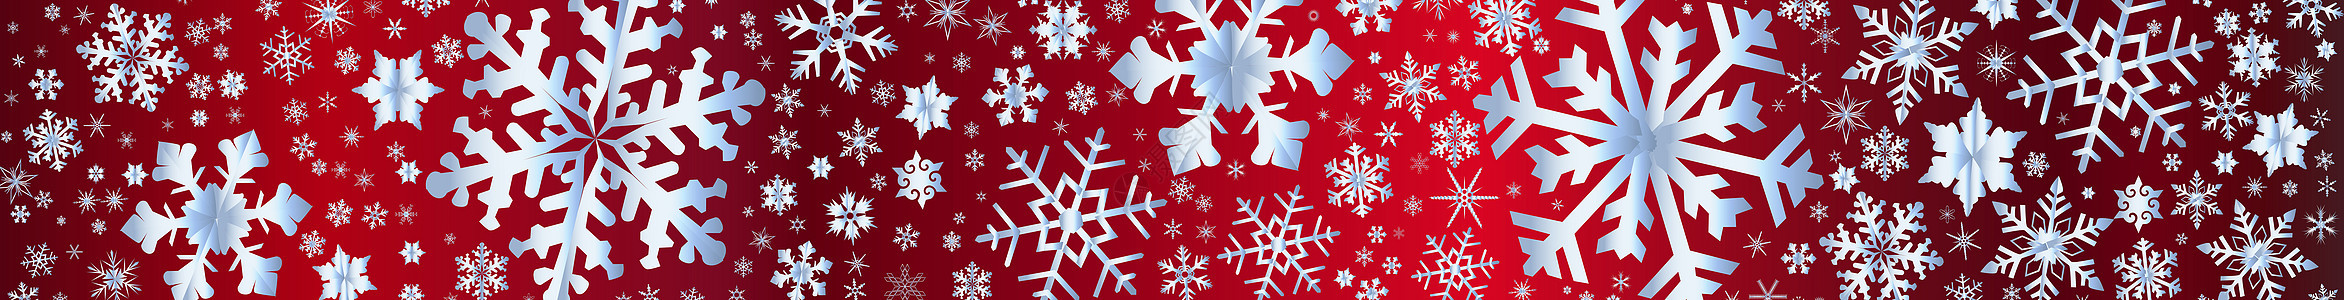 冷雪花冬年班纳艺术品绘画艺术白色横幅天气蓝色红色网络背景图片